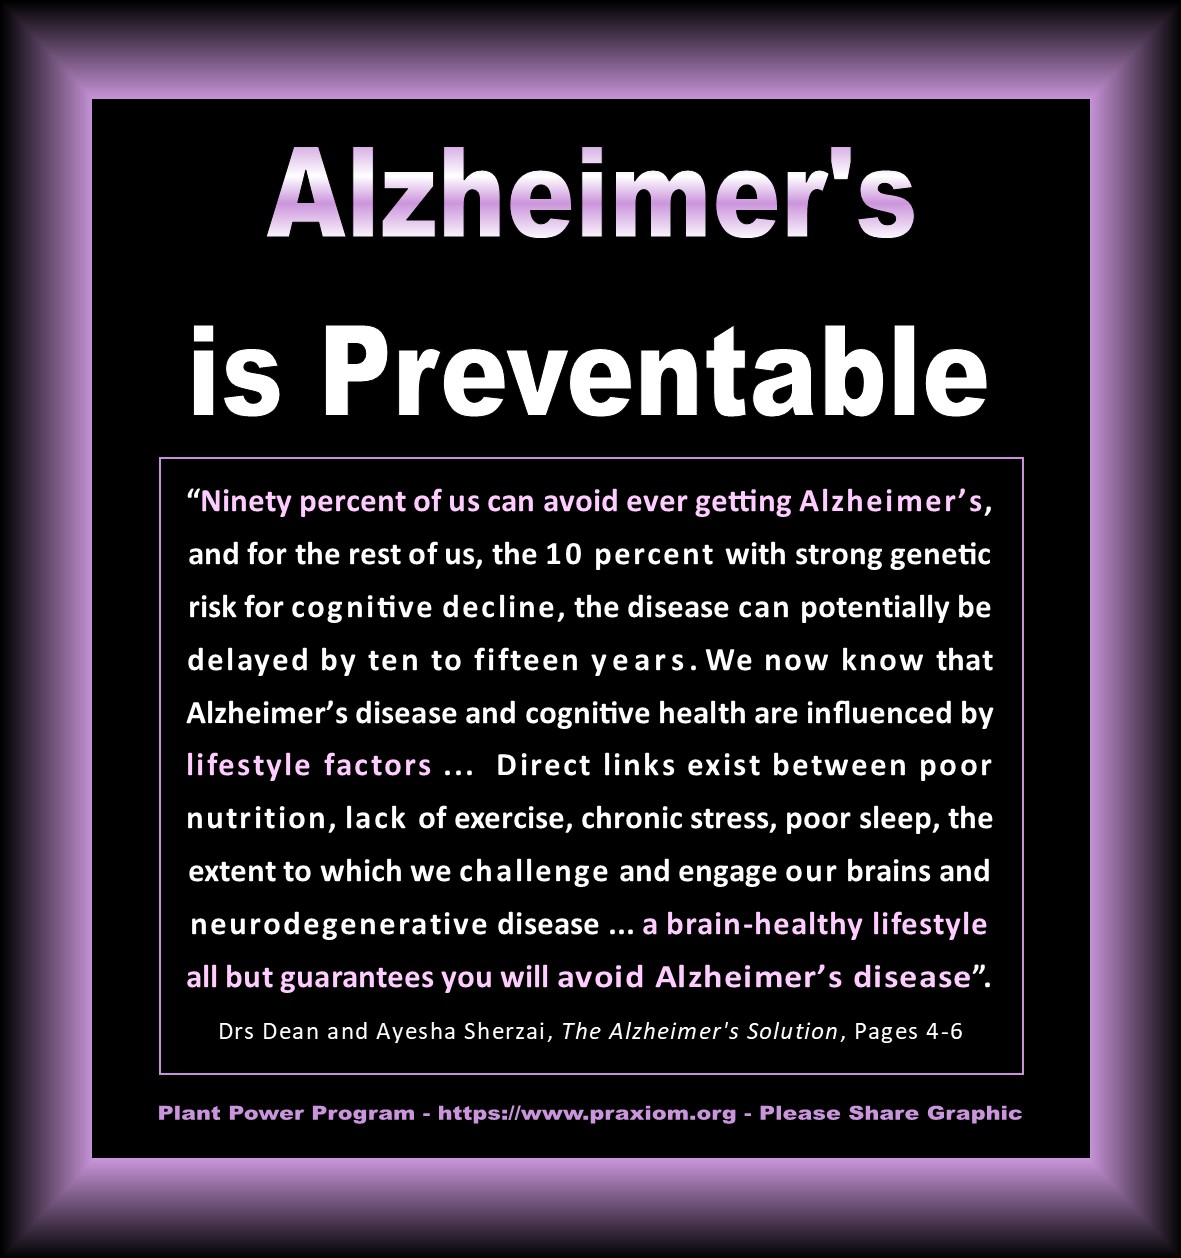 Alzheimer's is Preventable